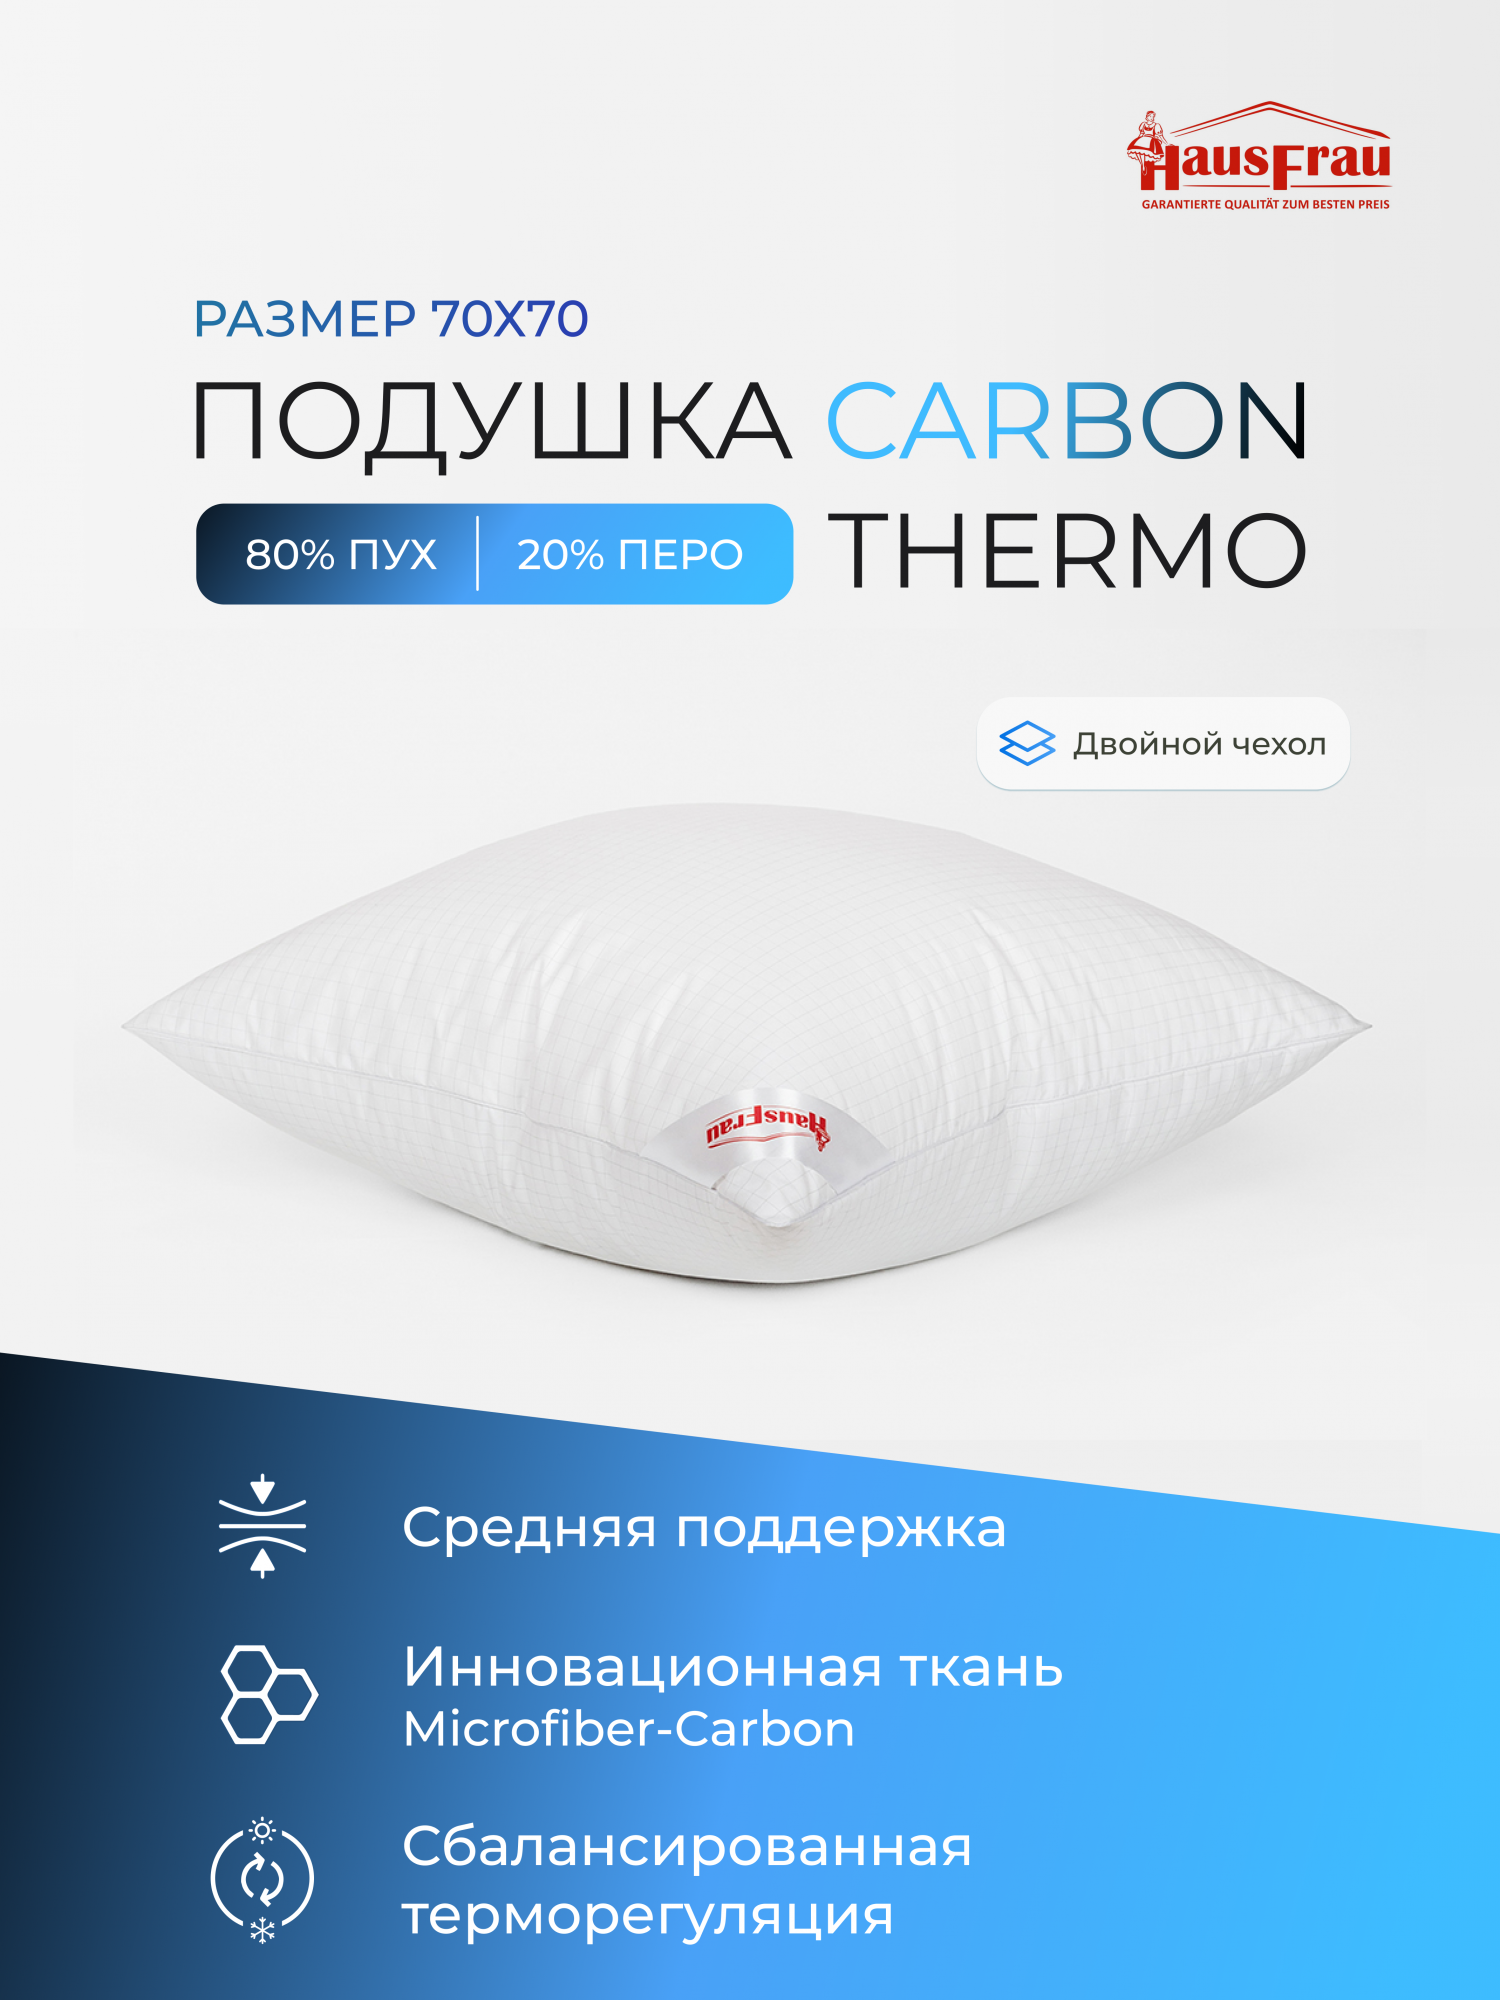 Подушка HausFrau Carbon Thermo средняя пух-перо 70х70